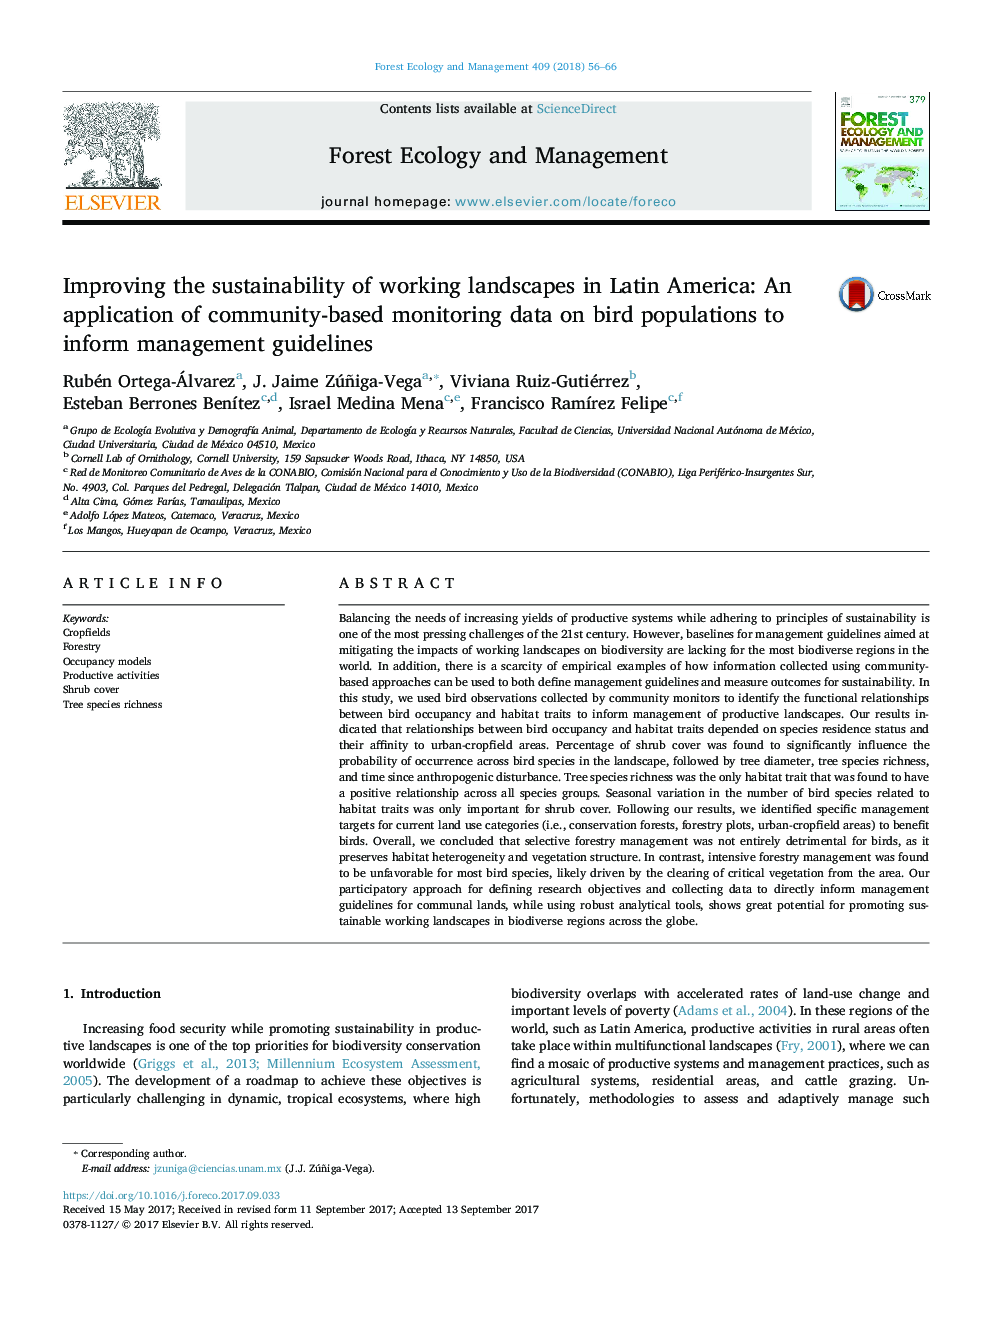 بهبود پایداری چشم اندازهای کار در آمریکای لاتین: استفاده از داده های نظارت بر جمعیت بر روی جمعیت پرندگان جهت اطلاع دادن به دستورالعمل های مدیریت 